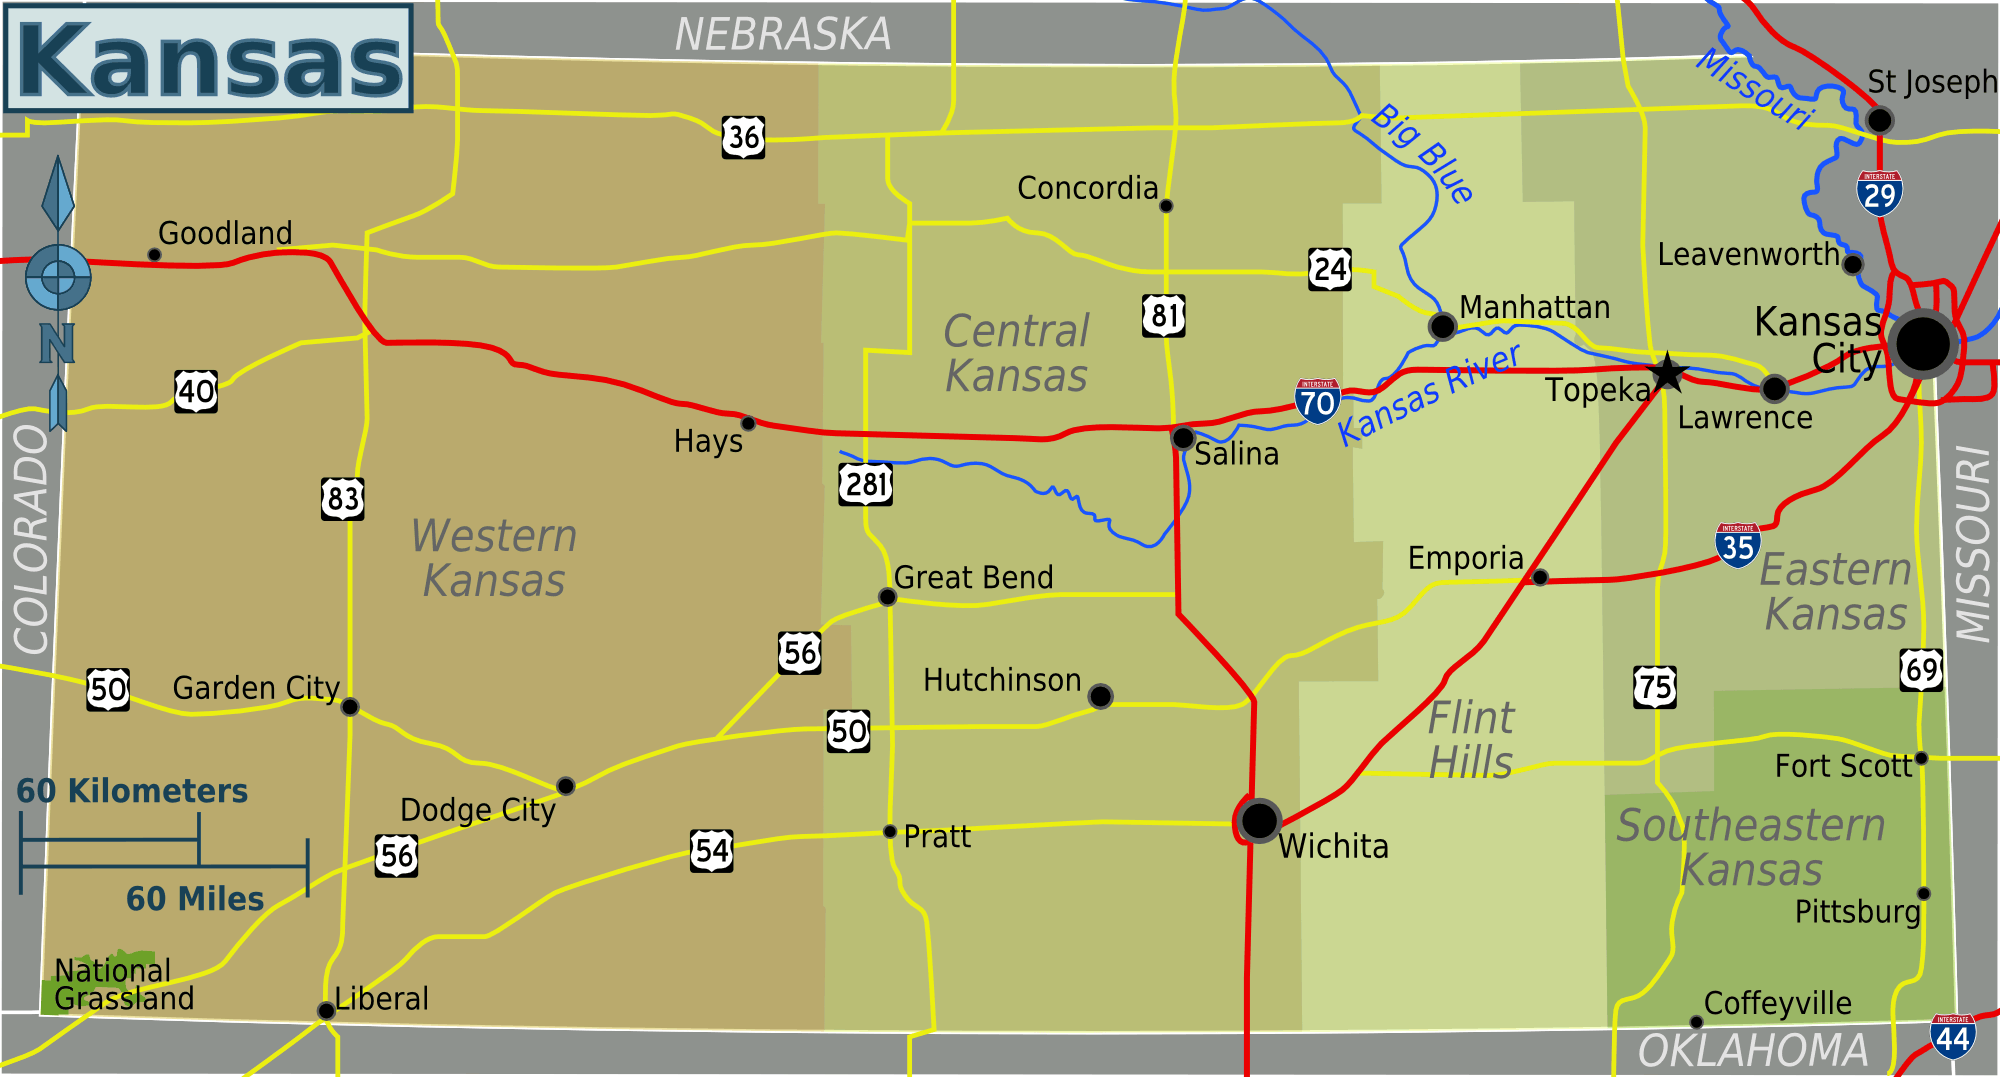 Kansas_bolgeler_harita.png